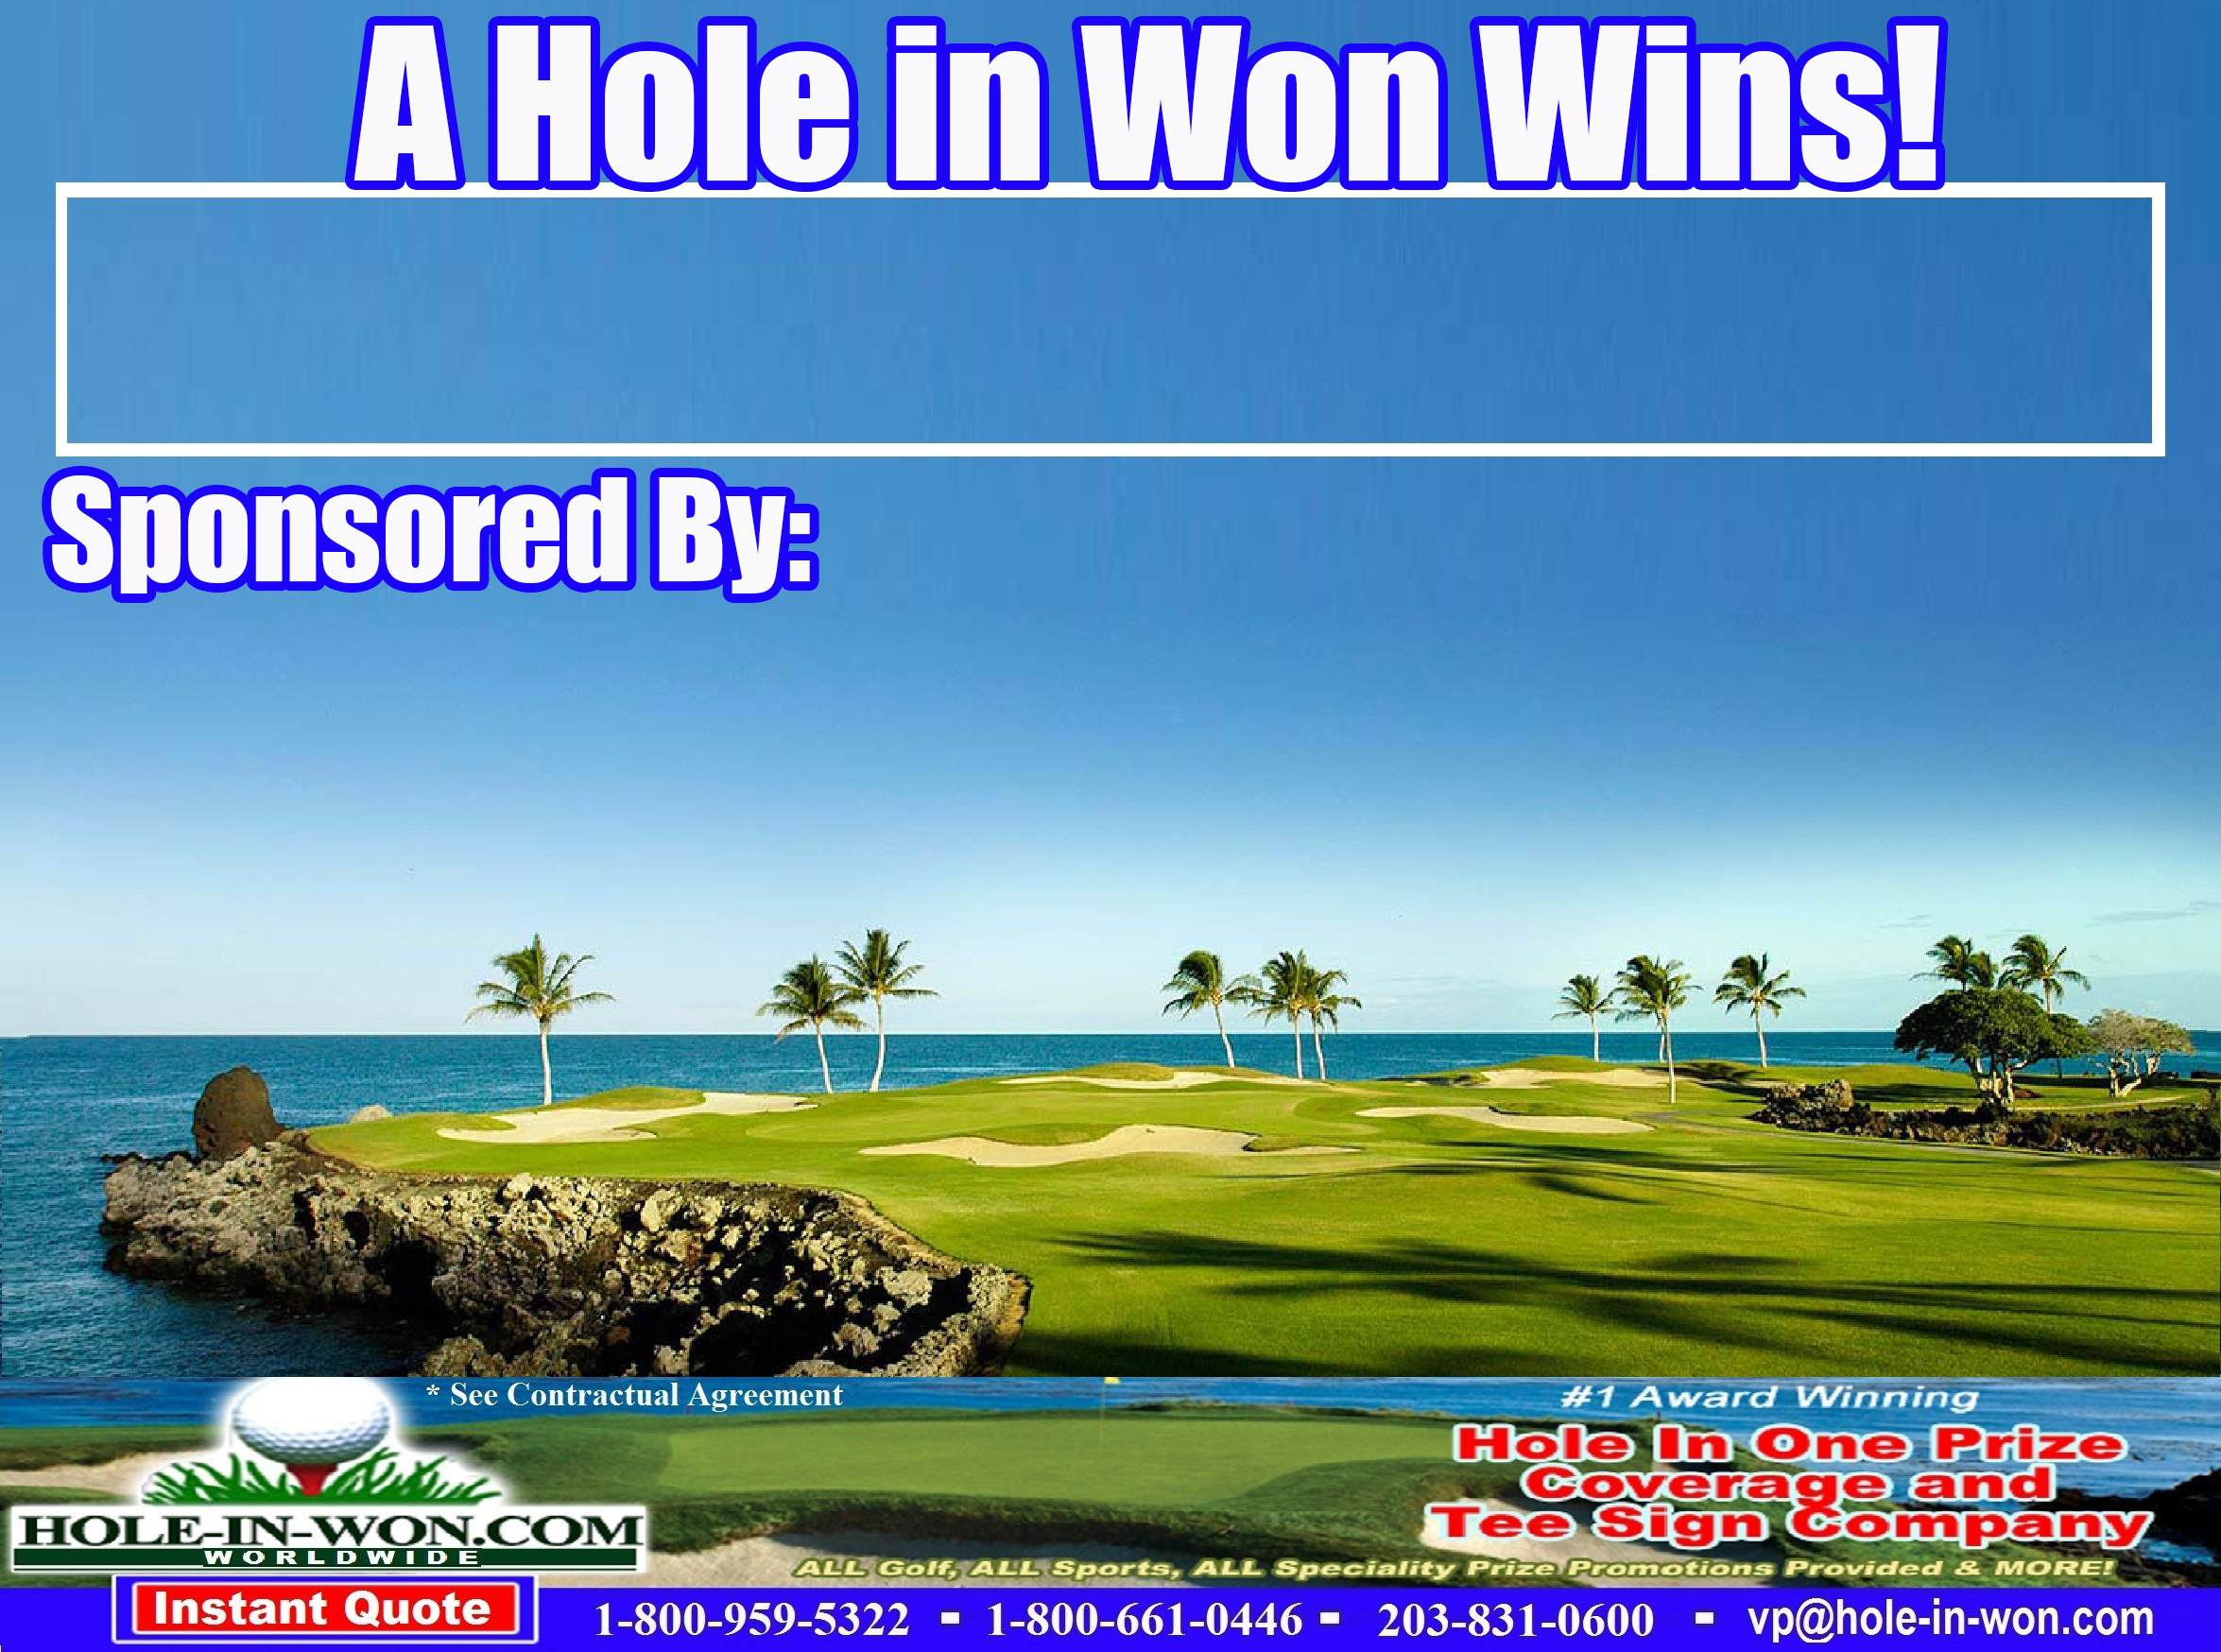 Hawaii Hole in One Golf Tee Sign